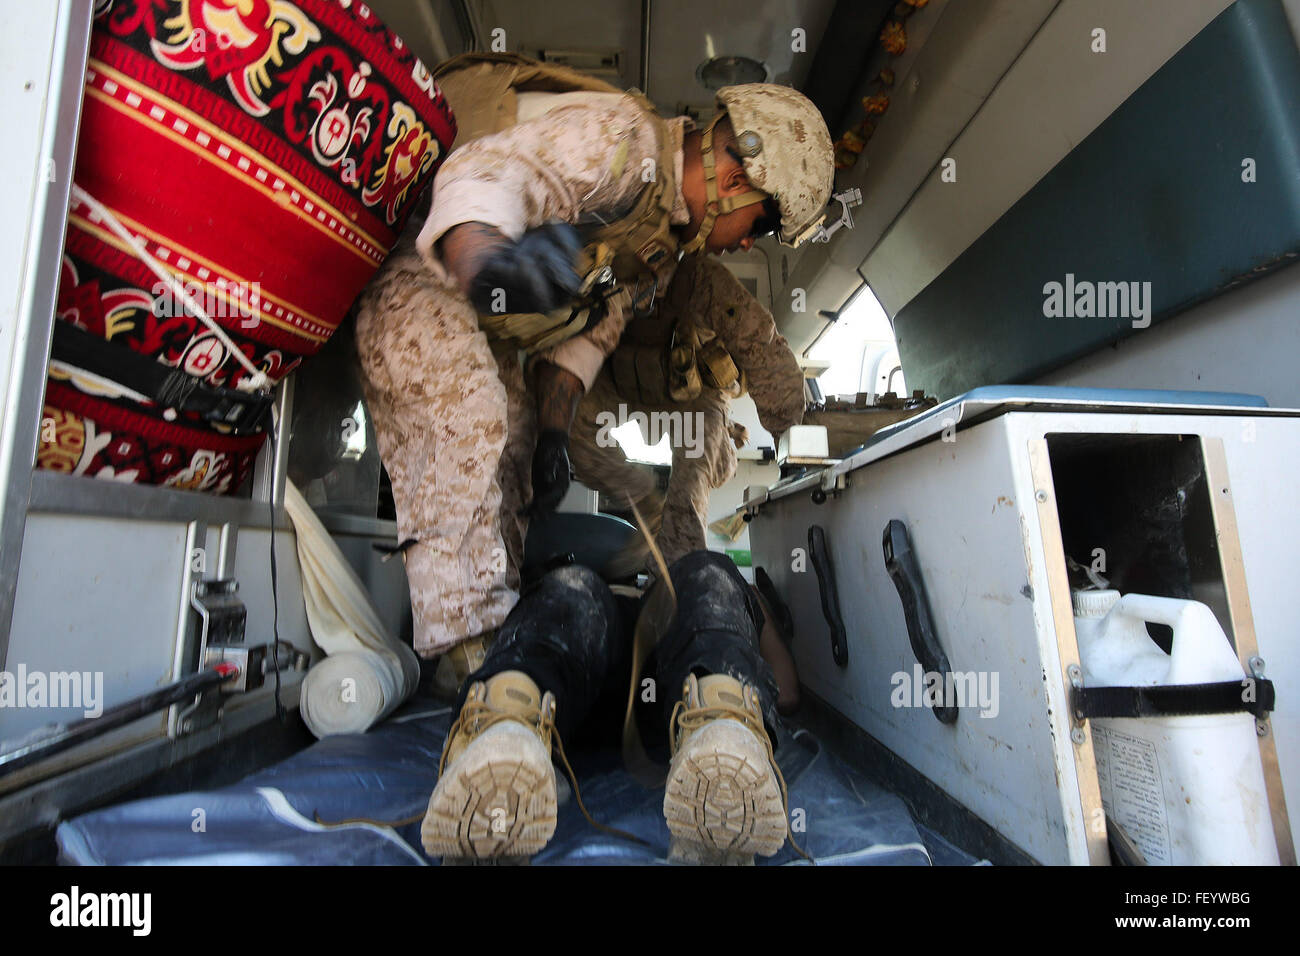 Marino de la Armada de EE.UU. Aprendiz Mikail Garib, un hospitalman con la empresa B, 1er Batallón, 7º Regimiento de la Infantería de Marina, la masa de aire marino de propósito especial Task Force - Crisis de respuesta - Comando Central, trata un soldado iraquí para combatir lesiones relacionadas al Taqaddum, Iraq, el 28 de noviembre, 2015. Soldados iraquíes heridos son ocasionalmente transportados desde campos de batalla en Ramadi y Faluya, Irak, a Al Taqaddum para recibir tratamiento médico por parte de militares estadounidenses. Marina corpsmen con "Bravo" la compañía, 1mn., 7 infantes de marina, son los primeros en responder para asistir a las víctimas. Marines y marineros con SPMAGTF-C Foto de stock